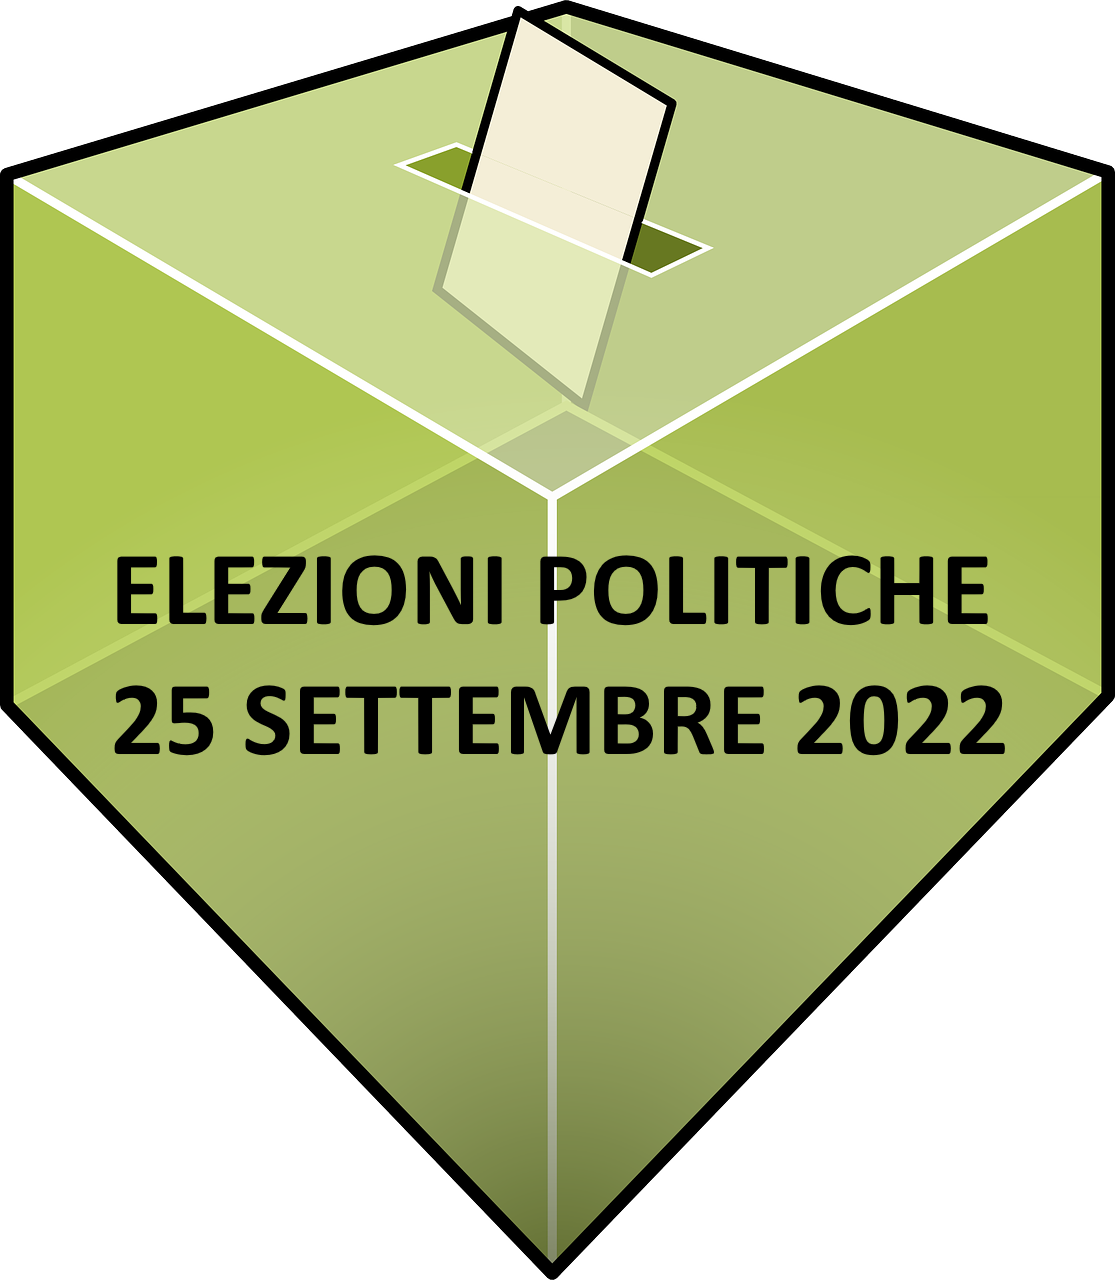 Elezioni 2022 - Manifesto candidati alla Camera dei Deputati